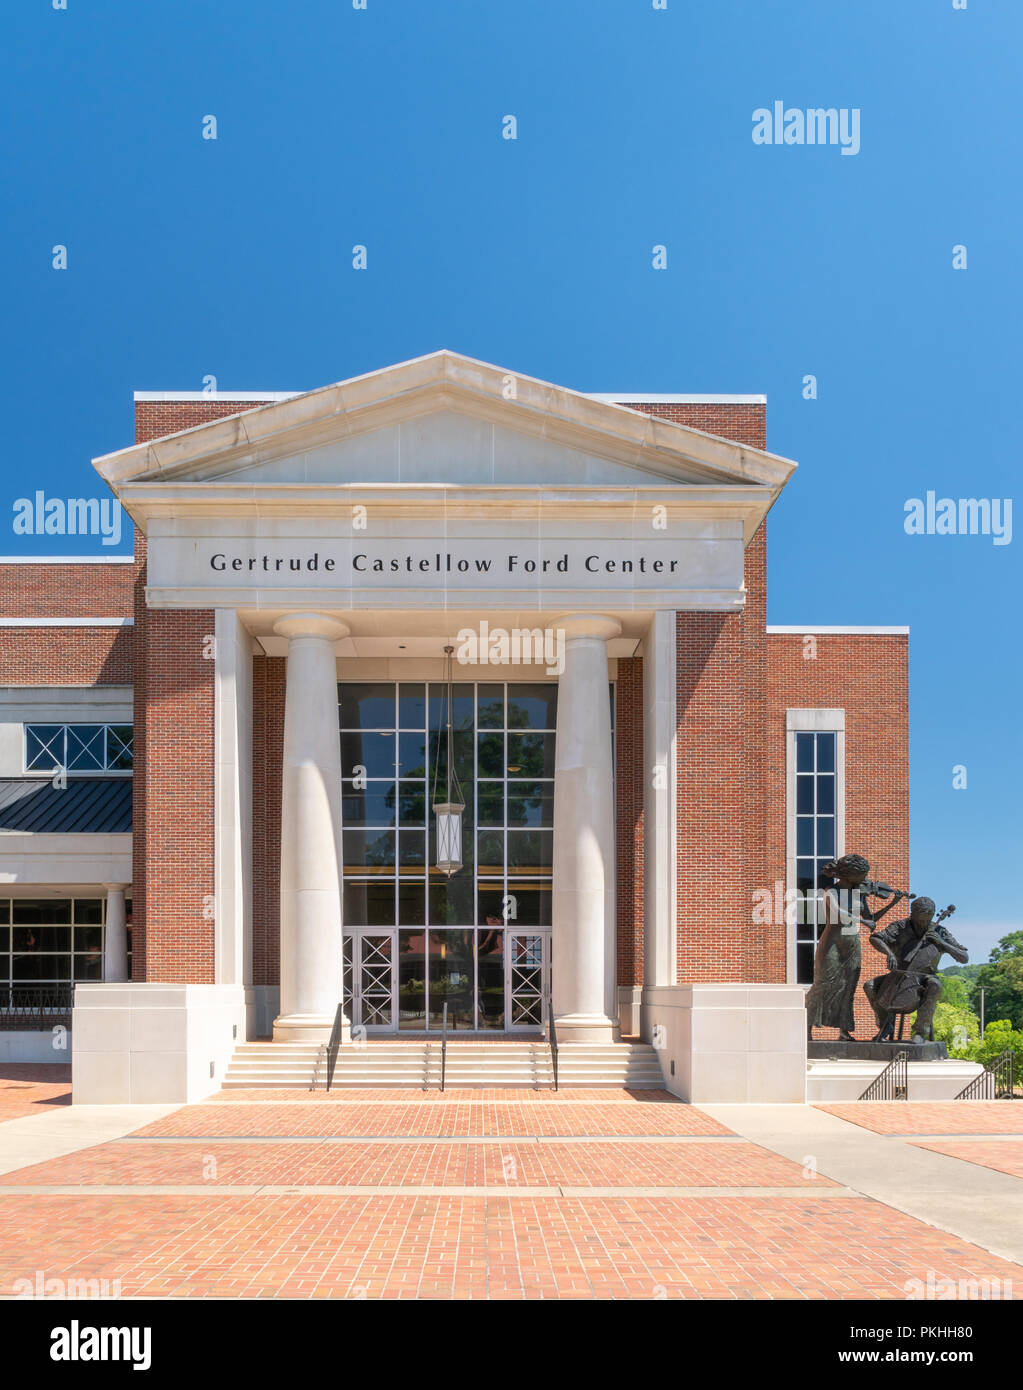 OXFORD, MS/USA - Juni 7, 2018: Gertrude Castellow Ford Center für Darstellende Künste auf dem Campus der Universität von Mississippi. Stockfoto